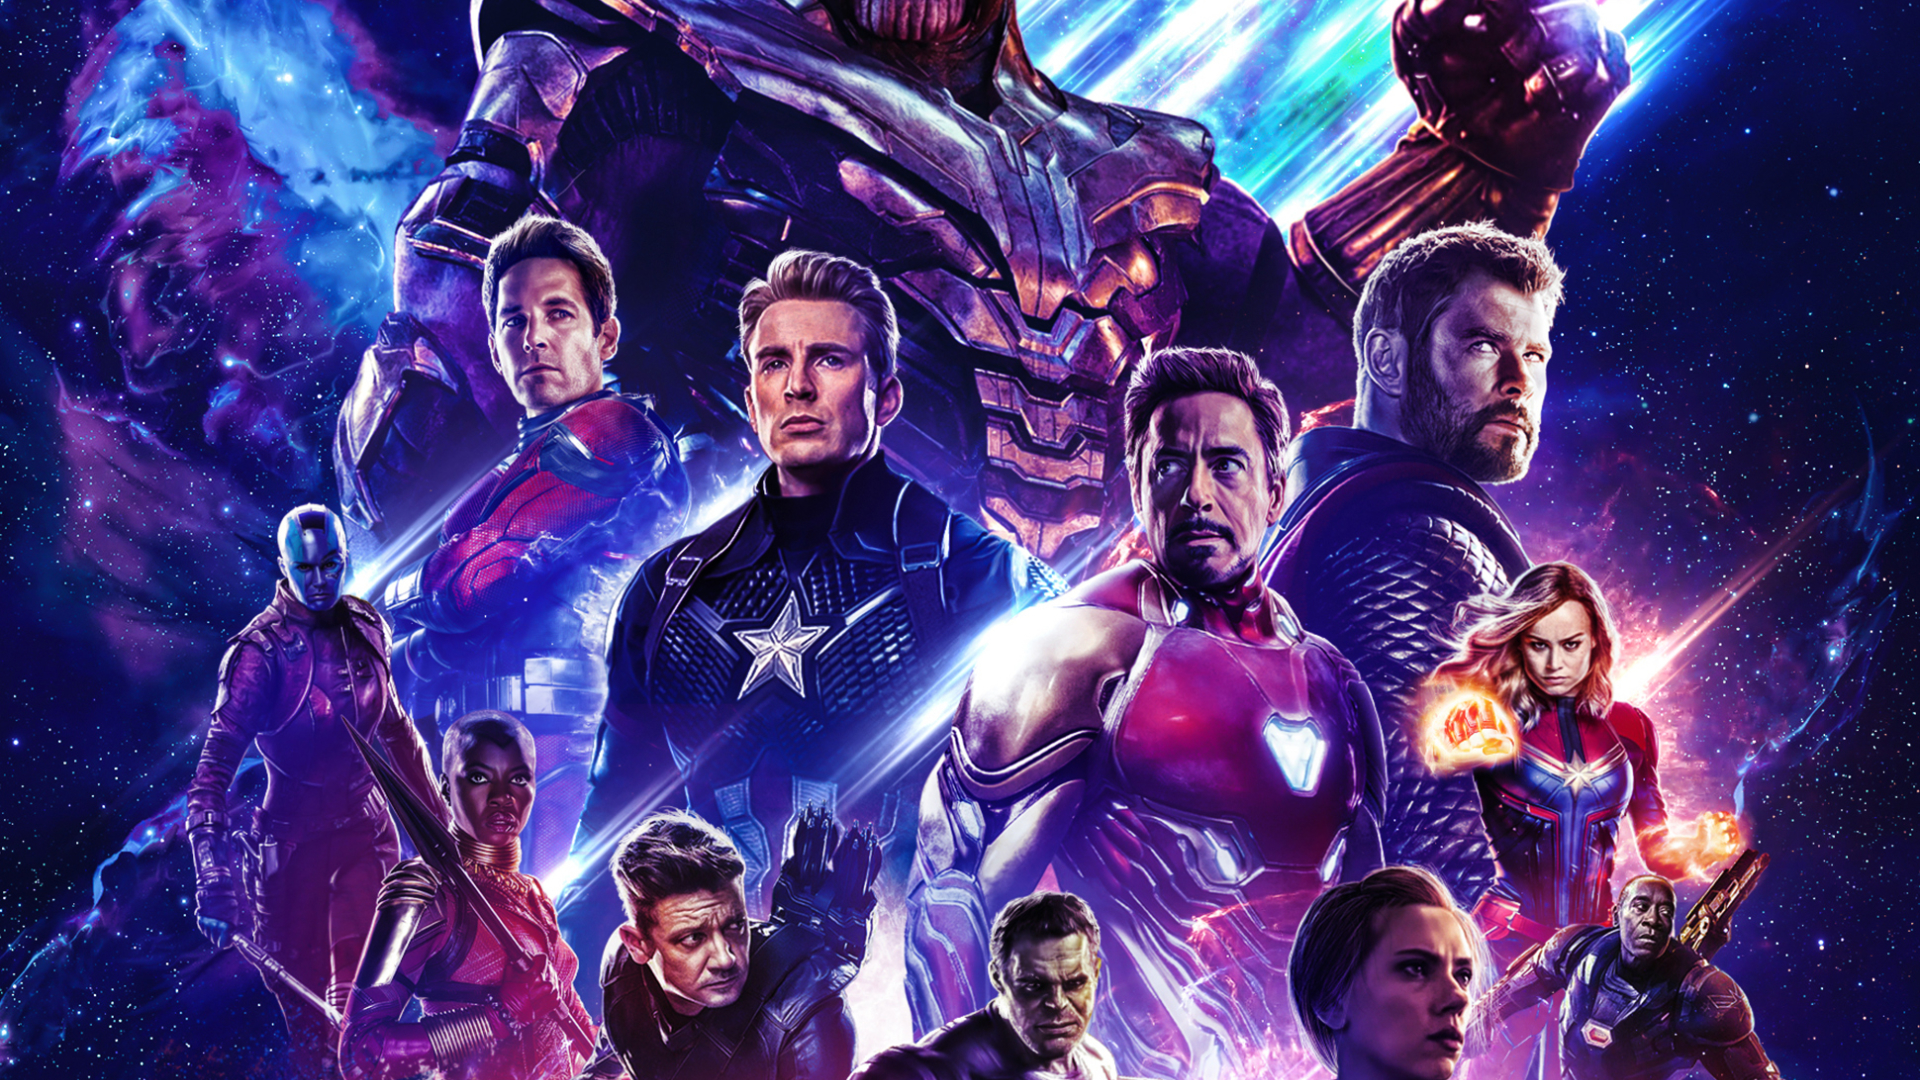 Avengers Endgame , HD Wallpaper & Backgrounds